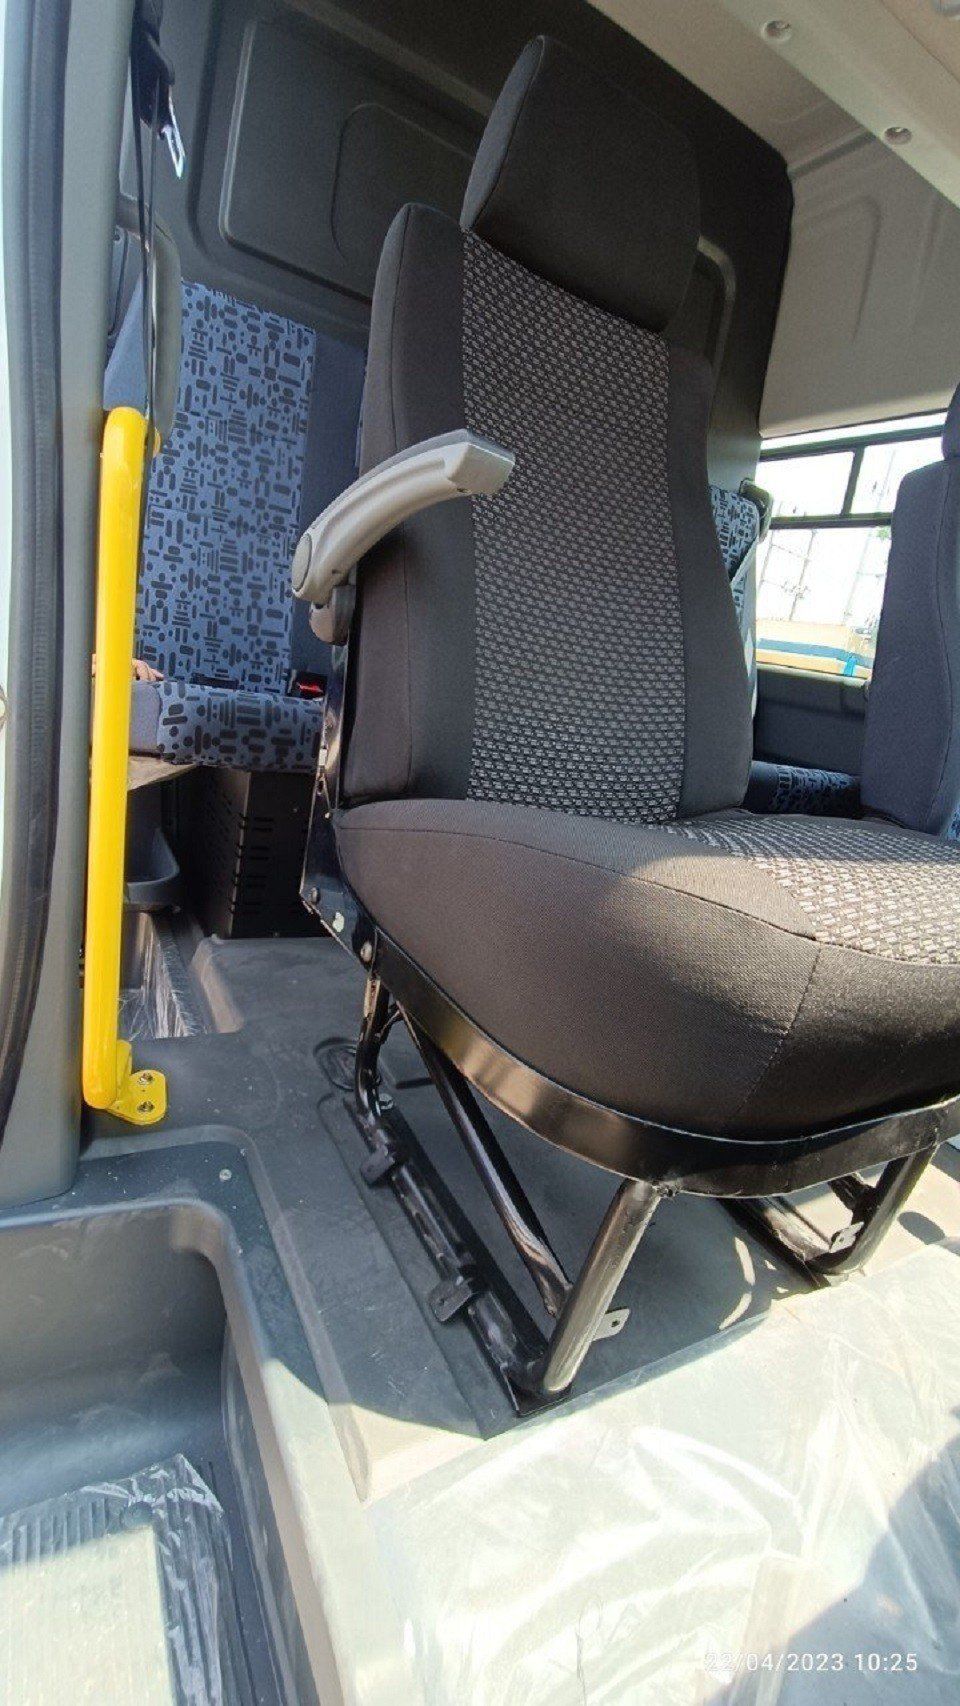 Gaz Gazelle Next Van 2023 - Xe tải Van 6 chỗ - 590kg, giao ngay cho khách, giá tốt nhất hệ thống